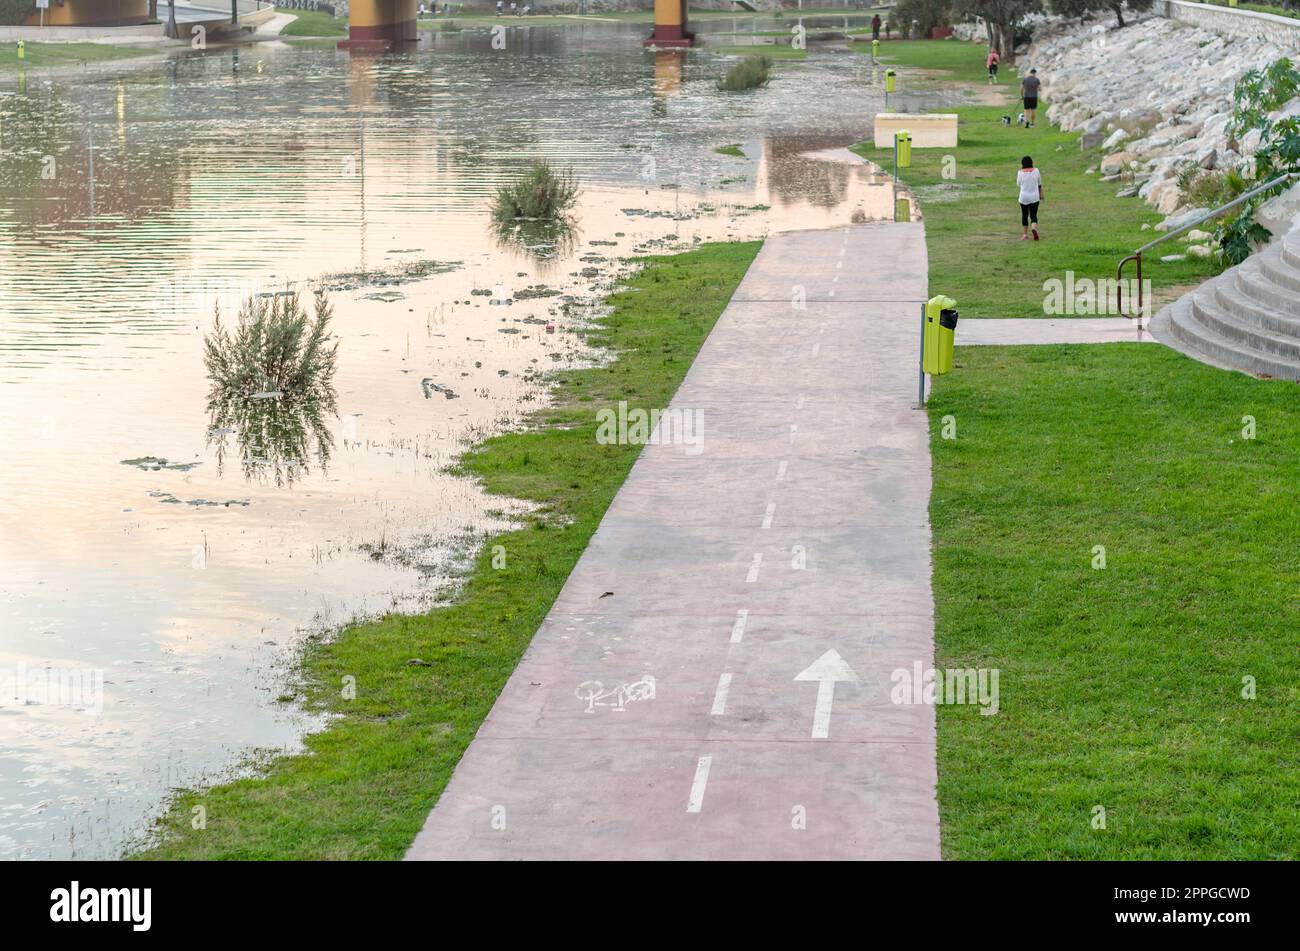 FUENGIROLA, SPANIEN - 11. OKTOBER 2021: Überschwemmungsgebiet am Ufer des Flusses Fuengirola während eines Sturms in der Stadt Fuengirola, Andalusien, Südspanien Stockfoto